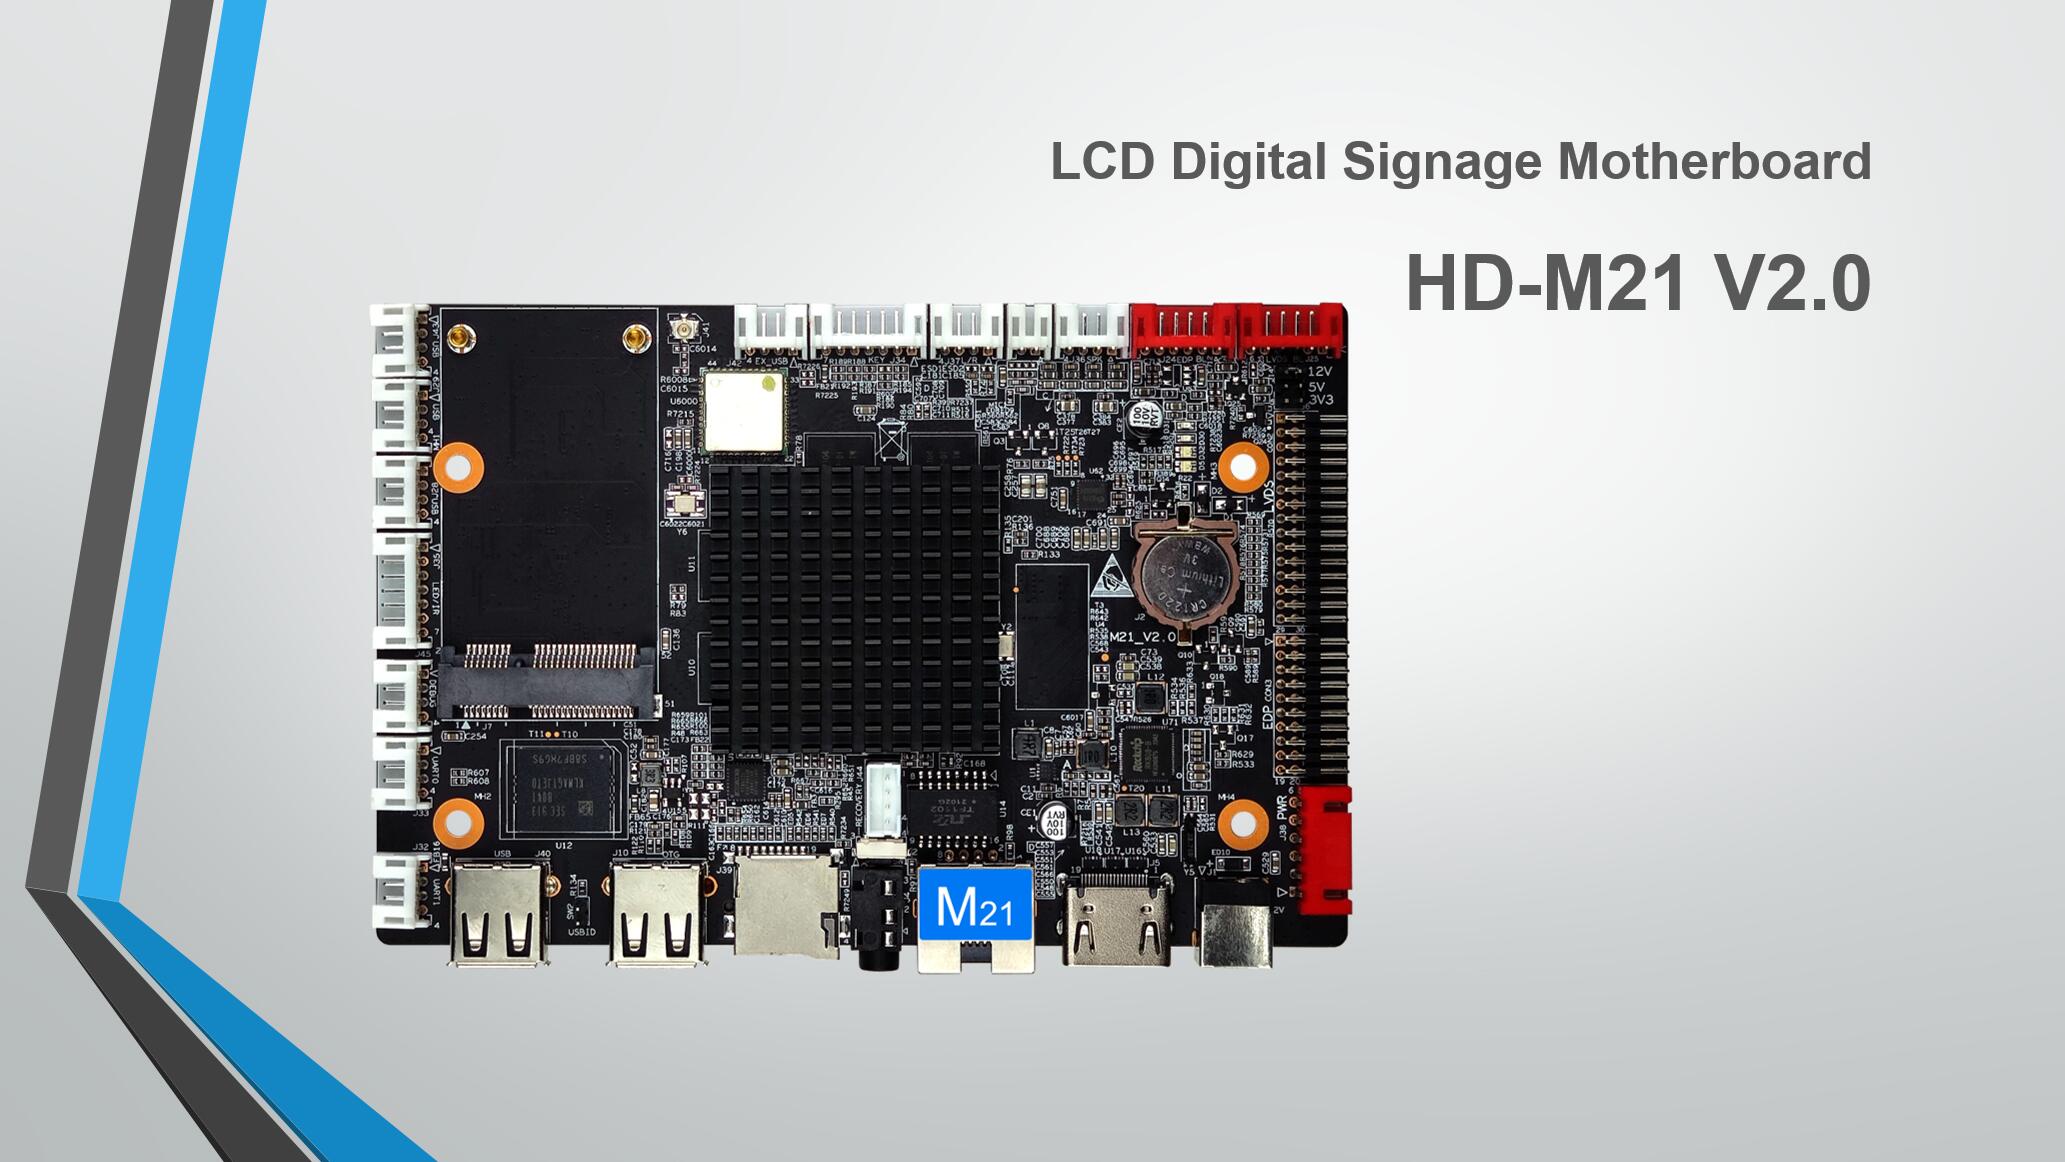 एलसीडी डिजिटल साइनेज मदरबोर्ड HD-M21